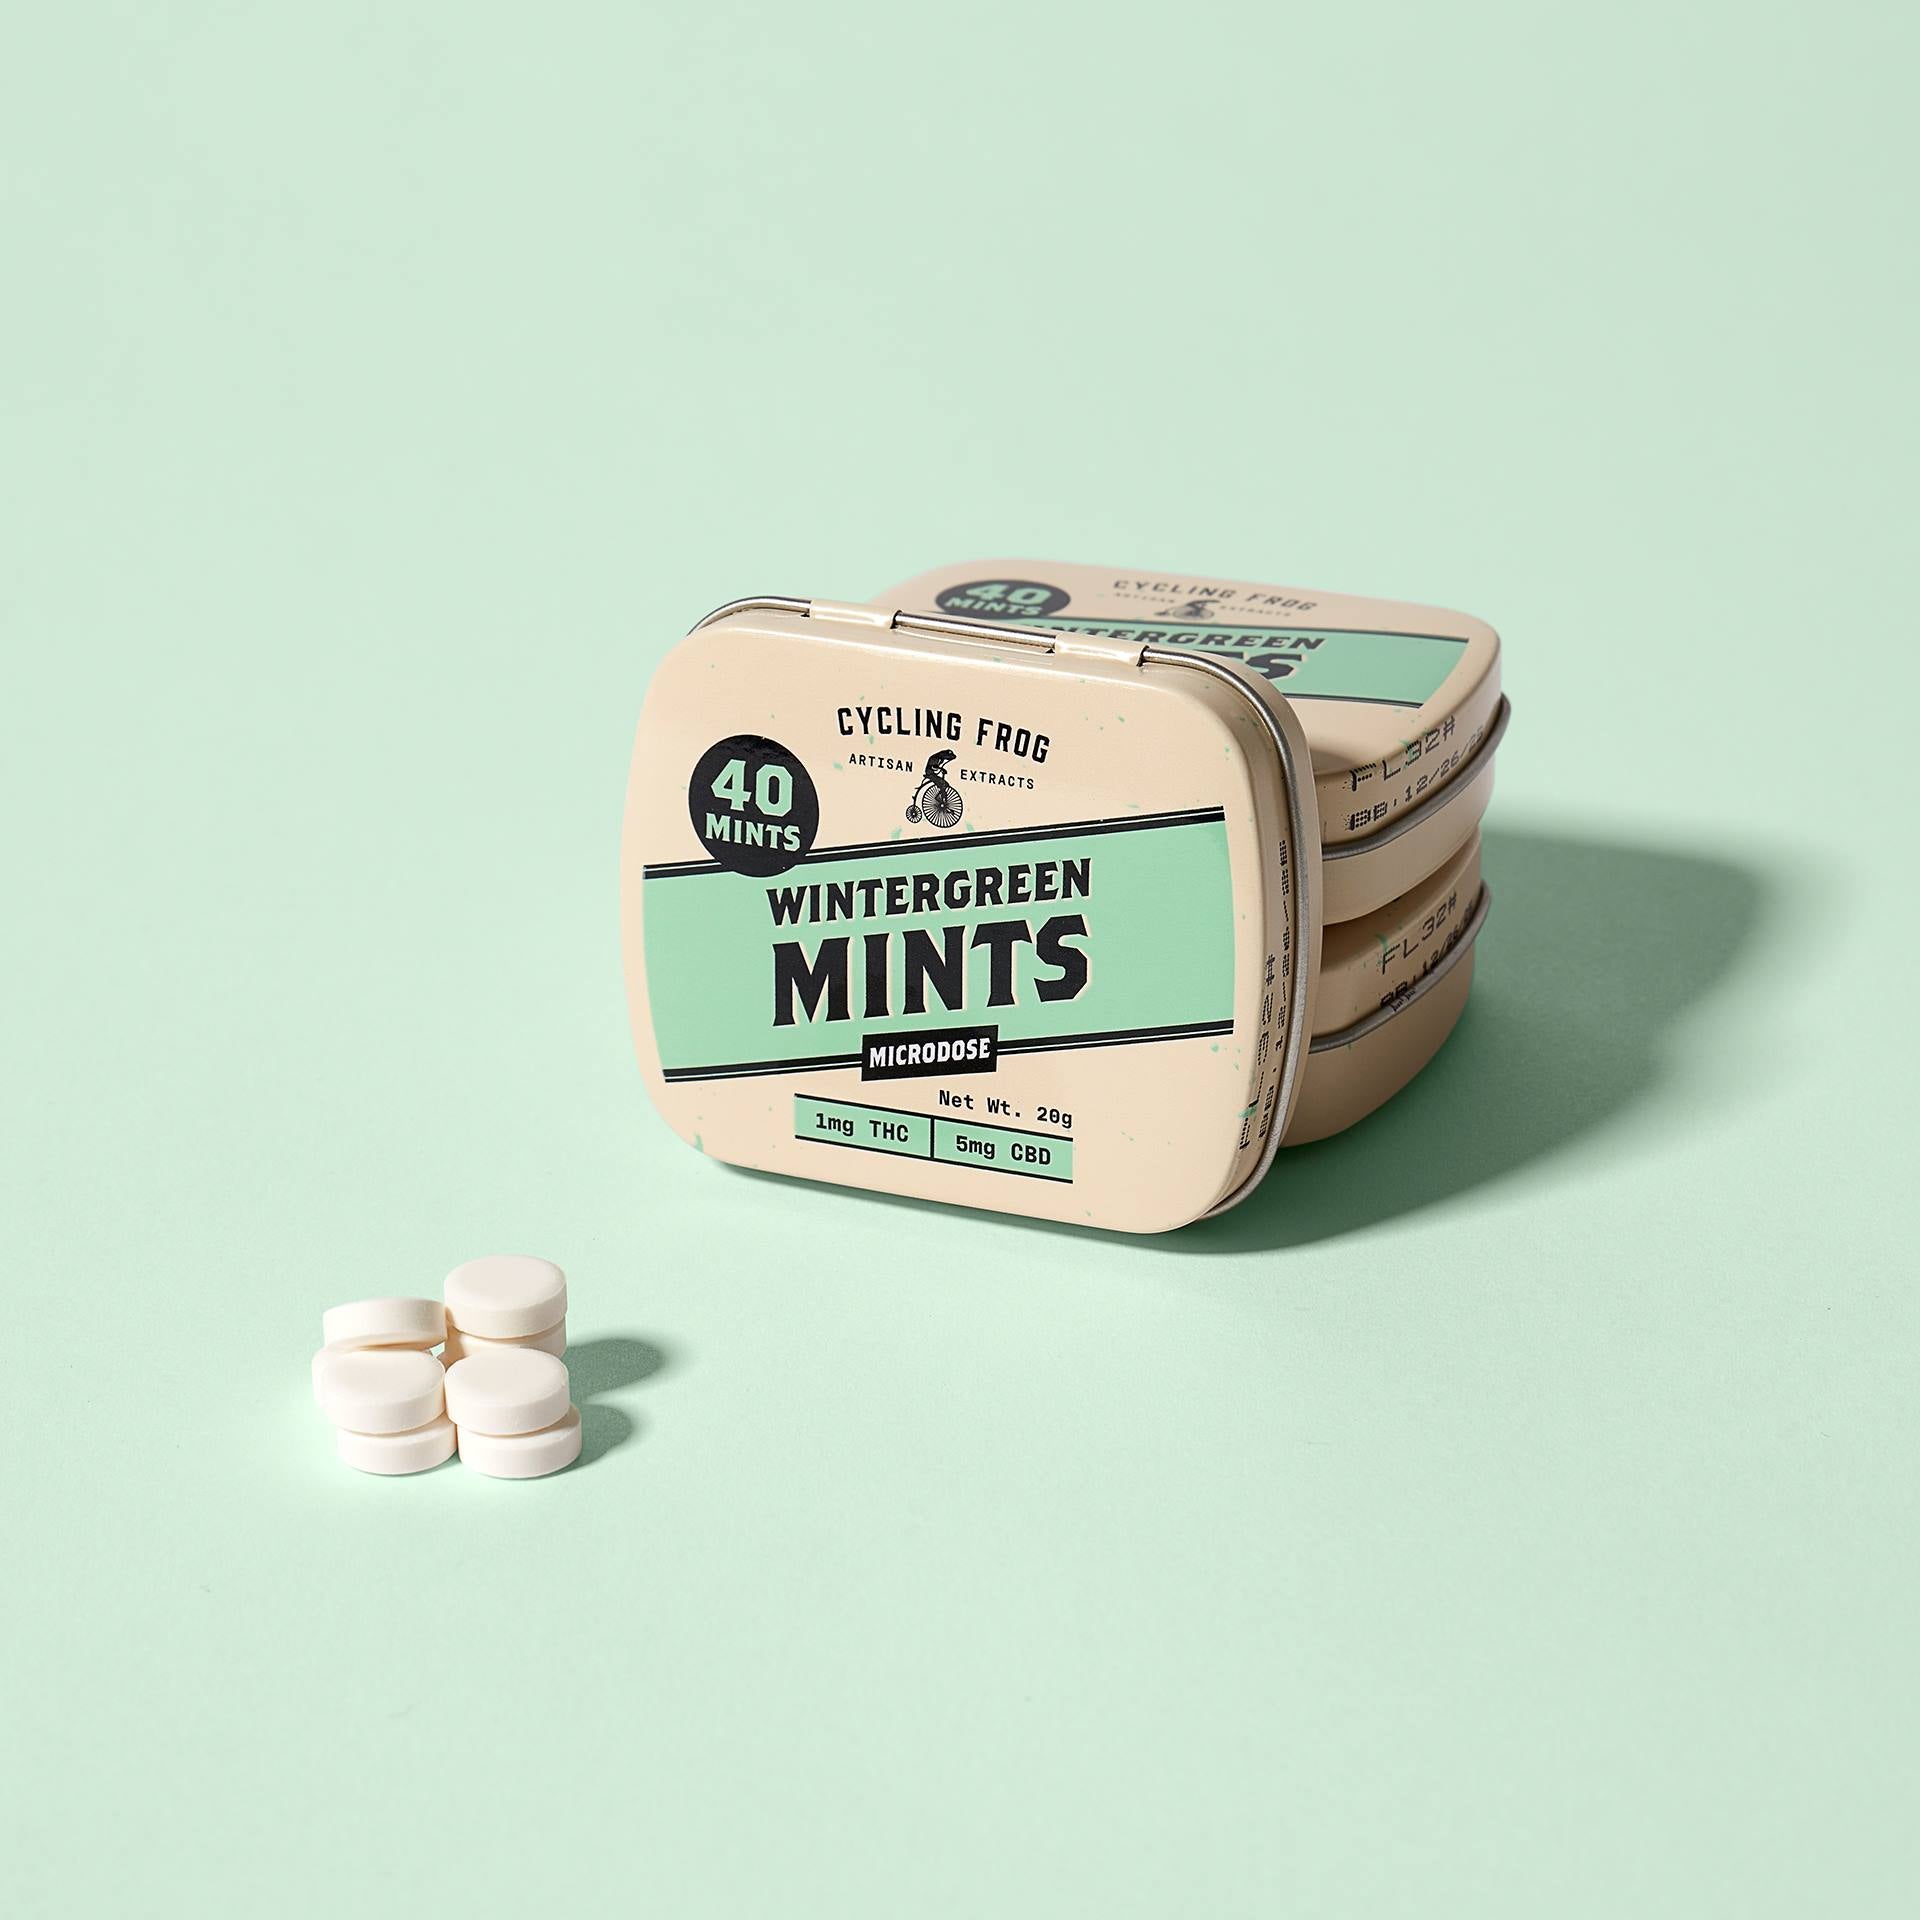 Wintergreen Mints, 1mg THC + 5mg CBD, 40ct